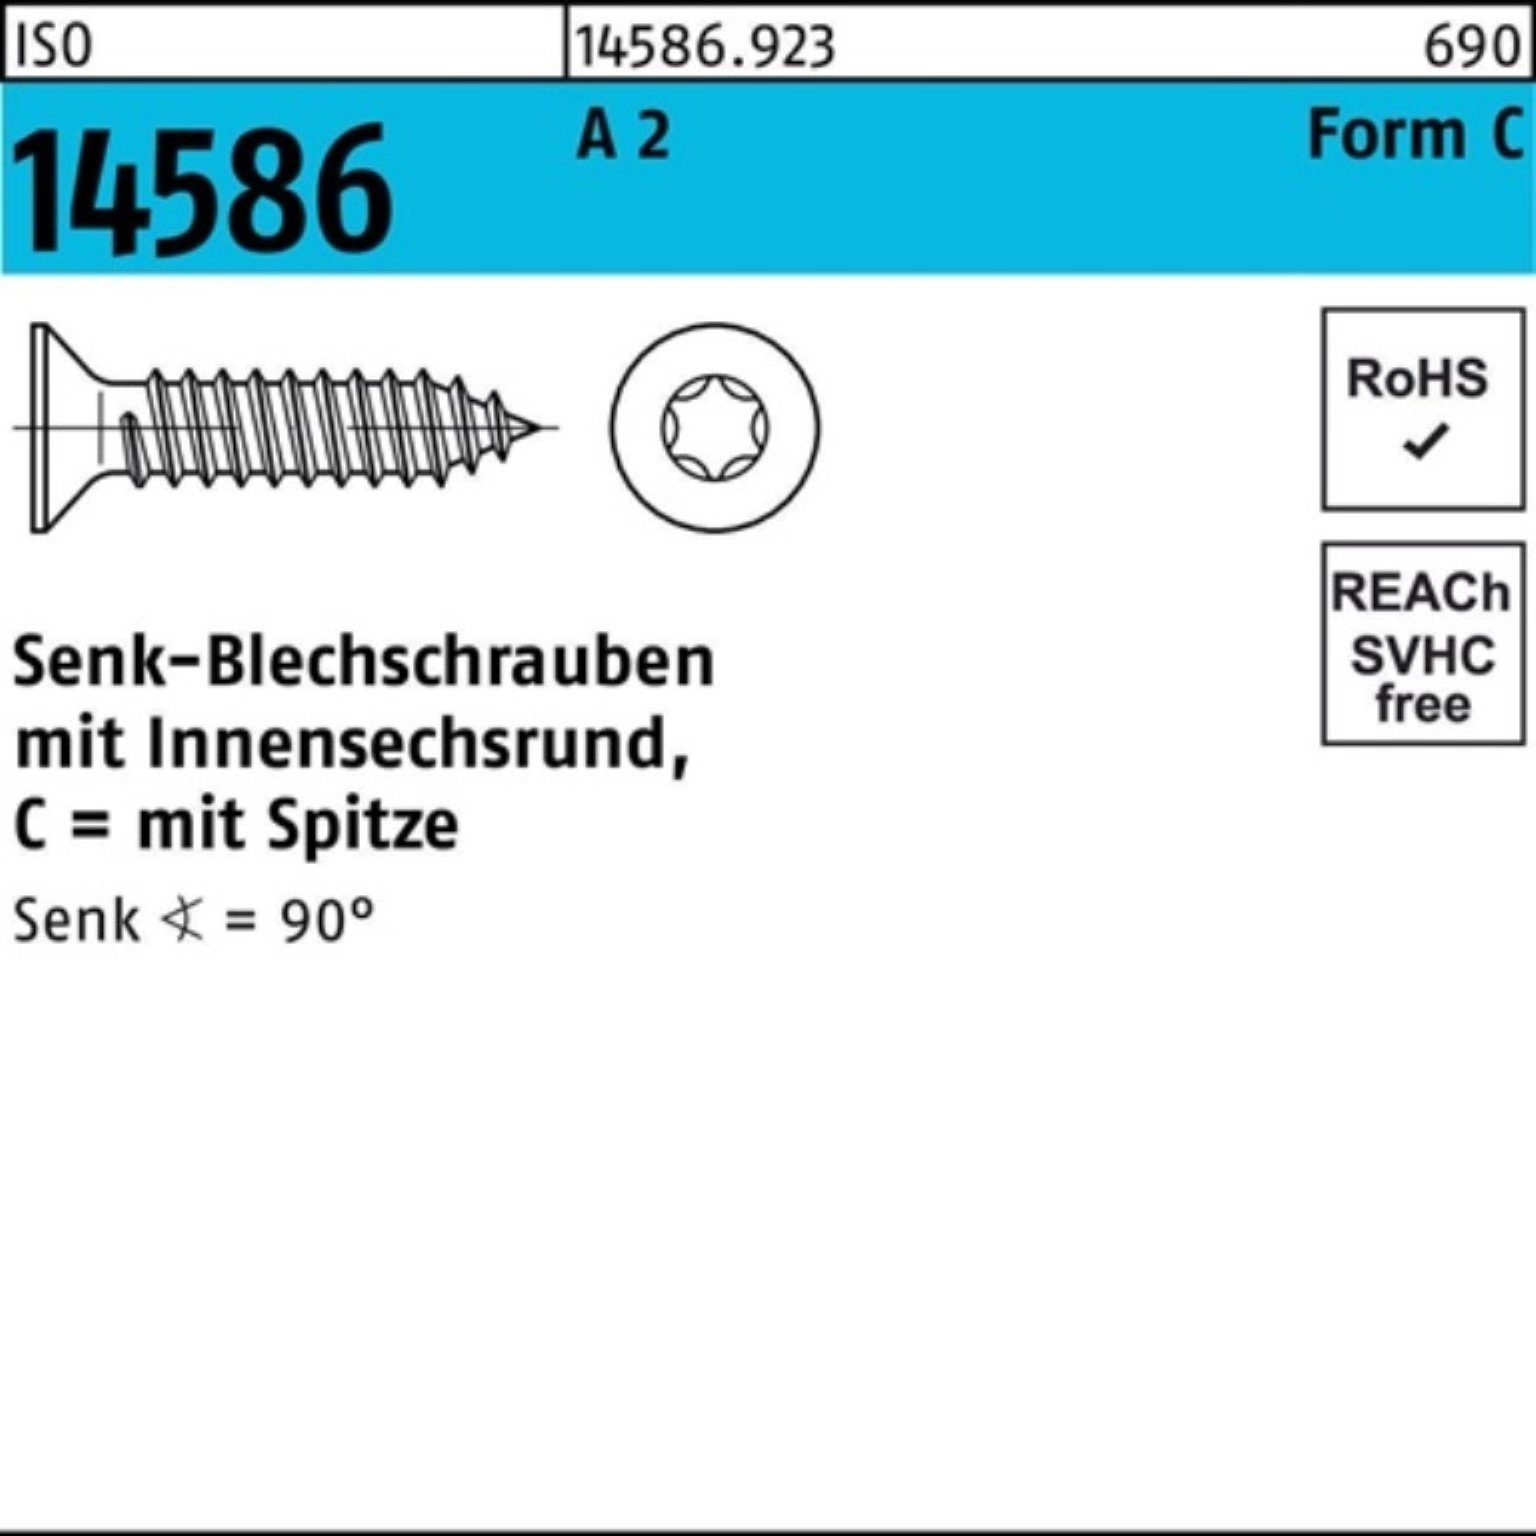 Reyher Schraube 4,2x A 16 ISR/Spitze Pack 2 14586 ISO 1000er -C T20 Senkblechschraube